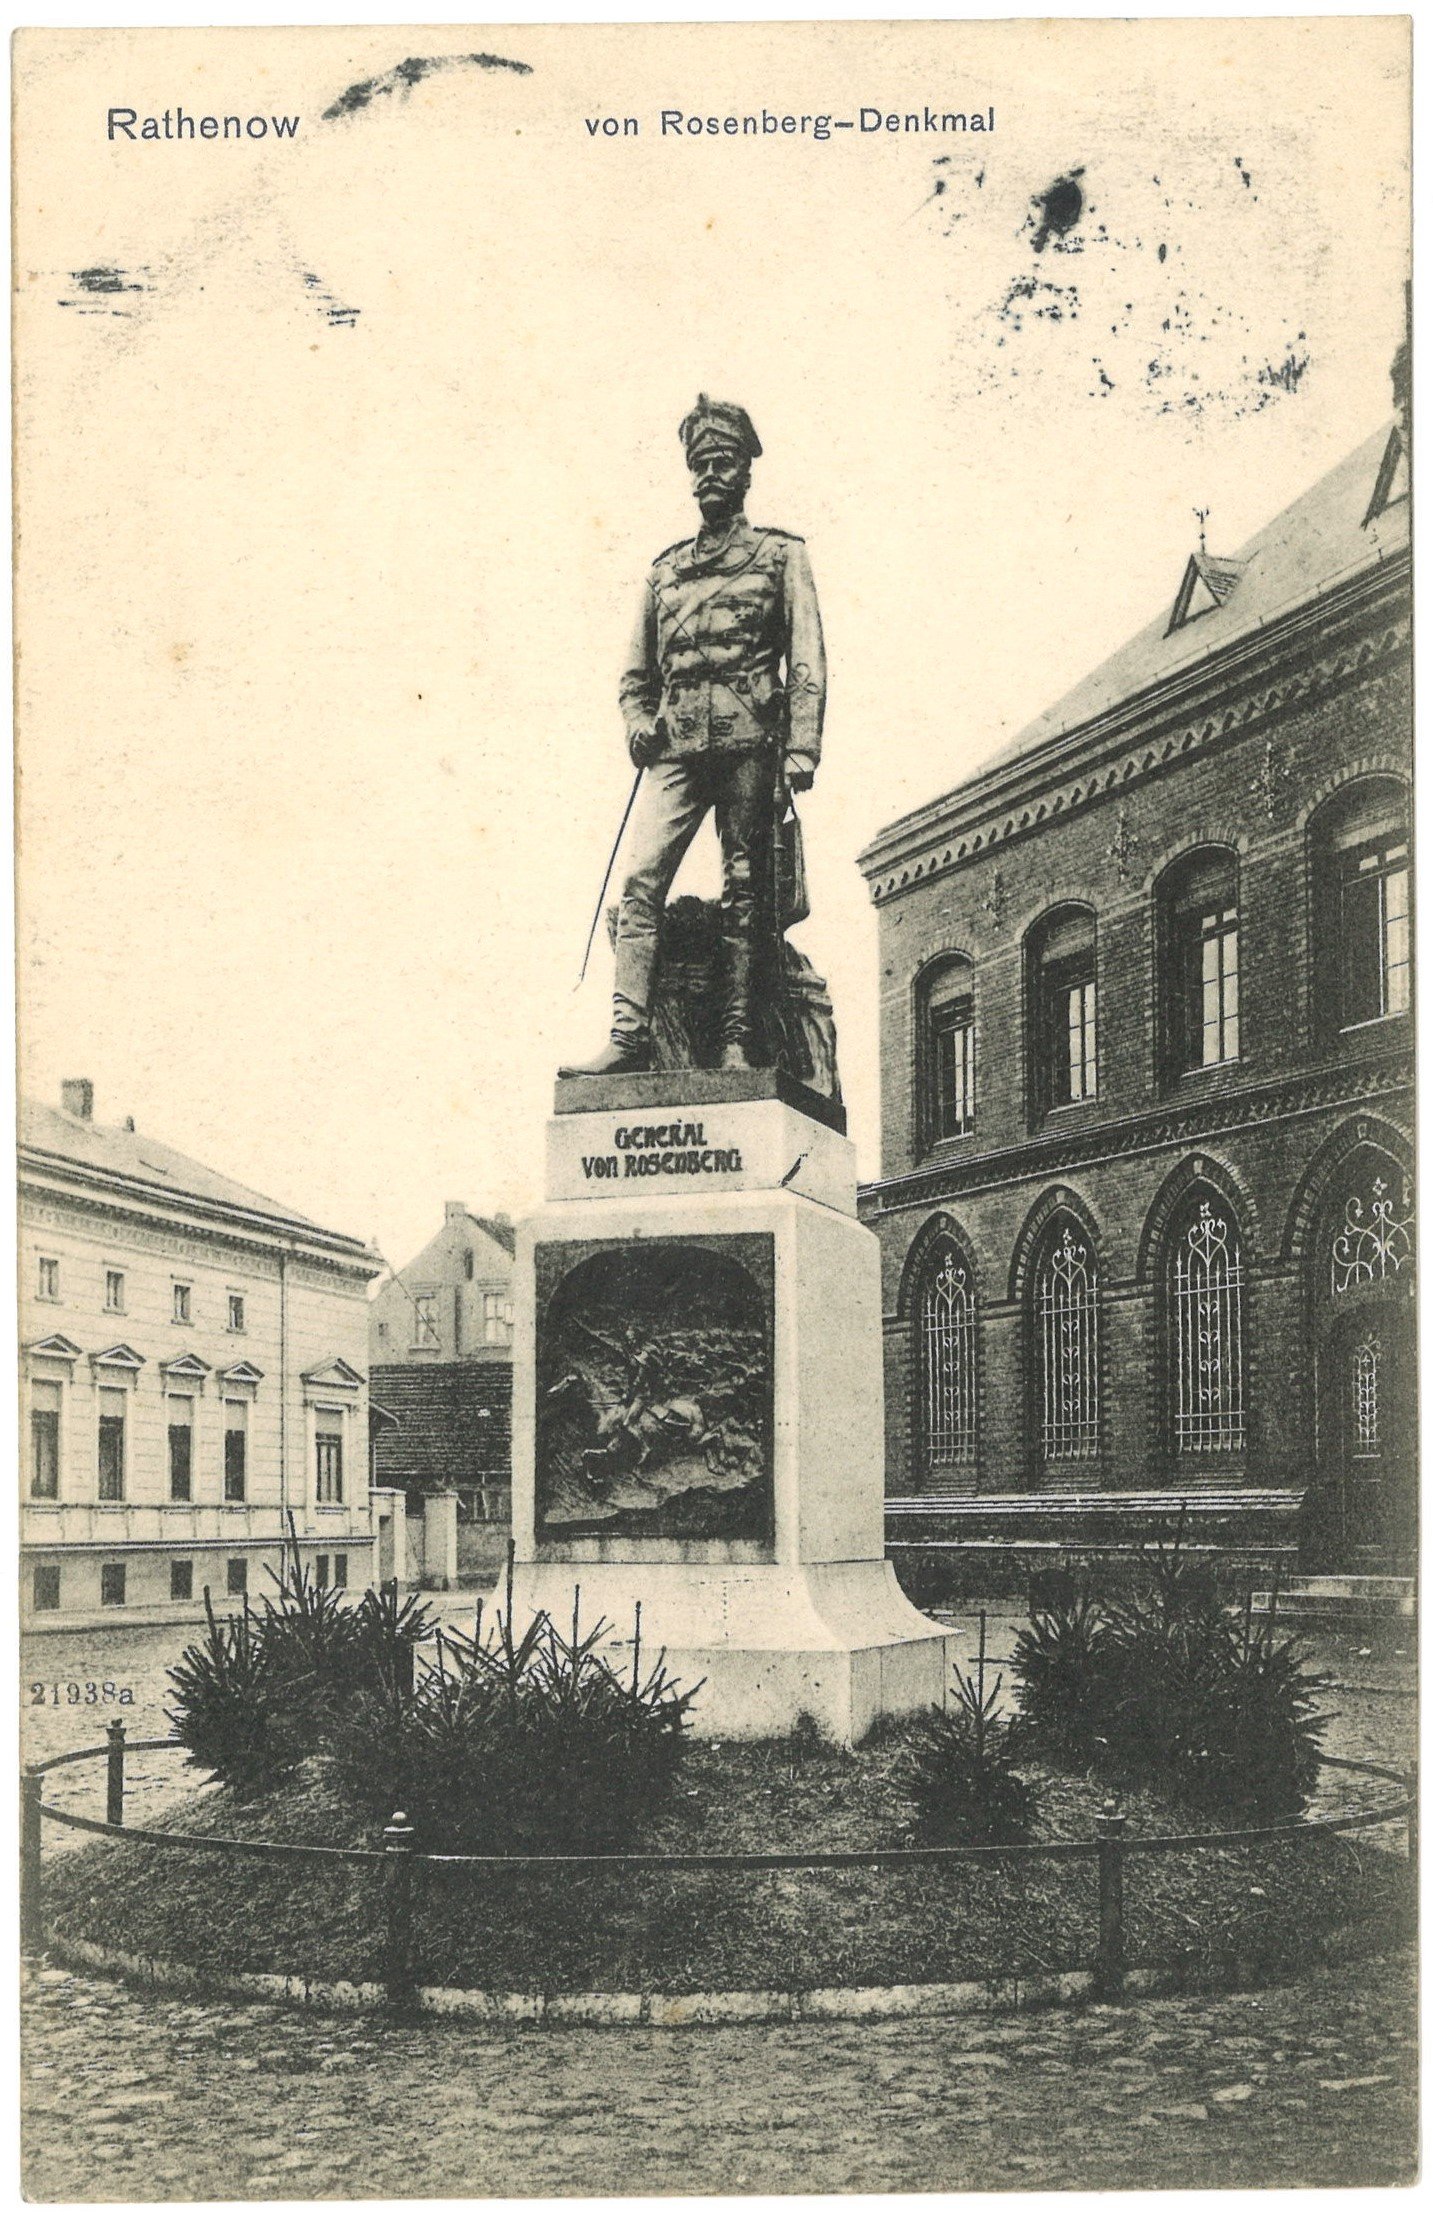 Rathenow: Rosenberg-Denkmal (Landesgeschichtliche Vereinigung für die Mark Brandenburg e.V. CC BY)